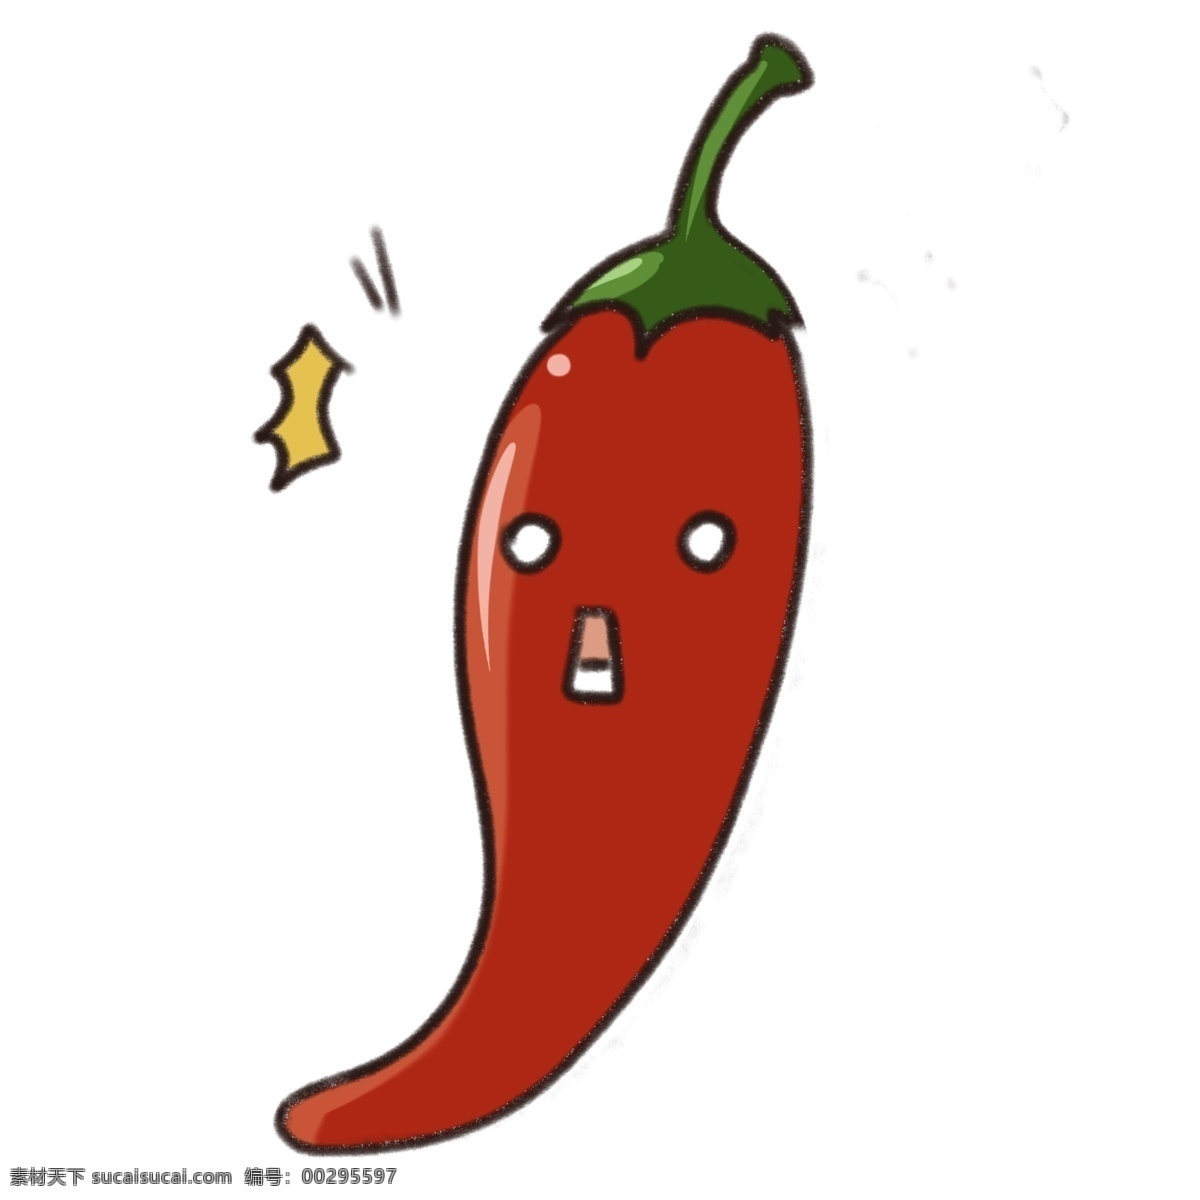 辣椒 蔬菜 辣 红色 火辣 朝天椒 调味品 食物 叶子 绿色食品 健康 辣味 卡通 装饰 装饰画 生长 自然 种植